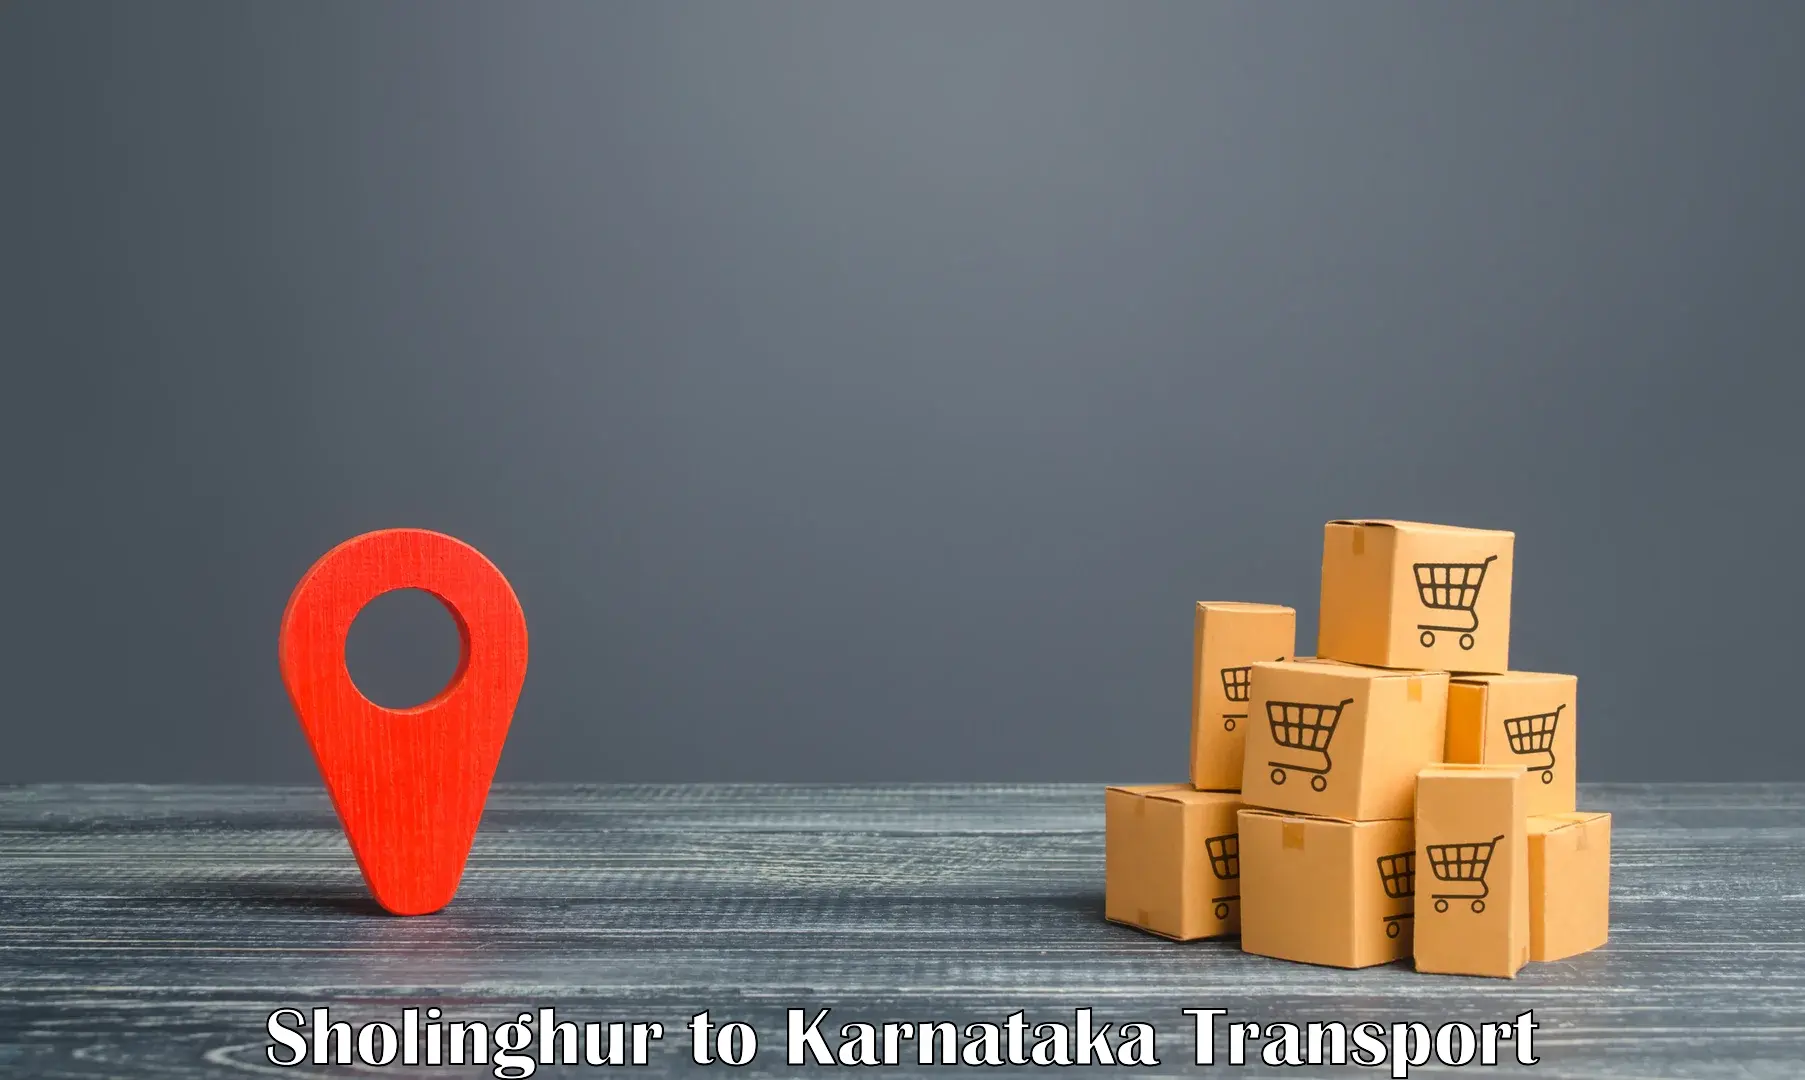 Furniture transport service Sholinghur to Eedu